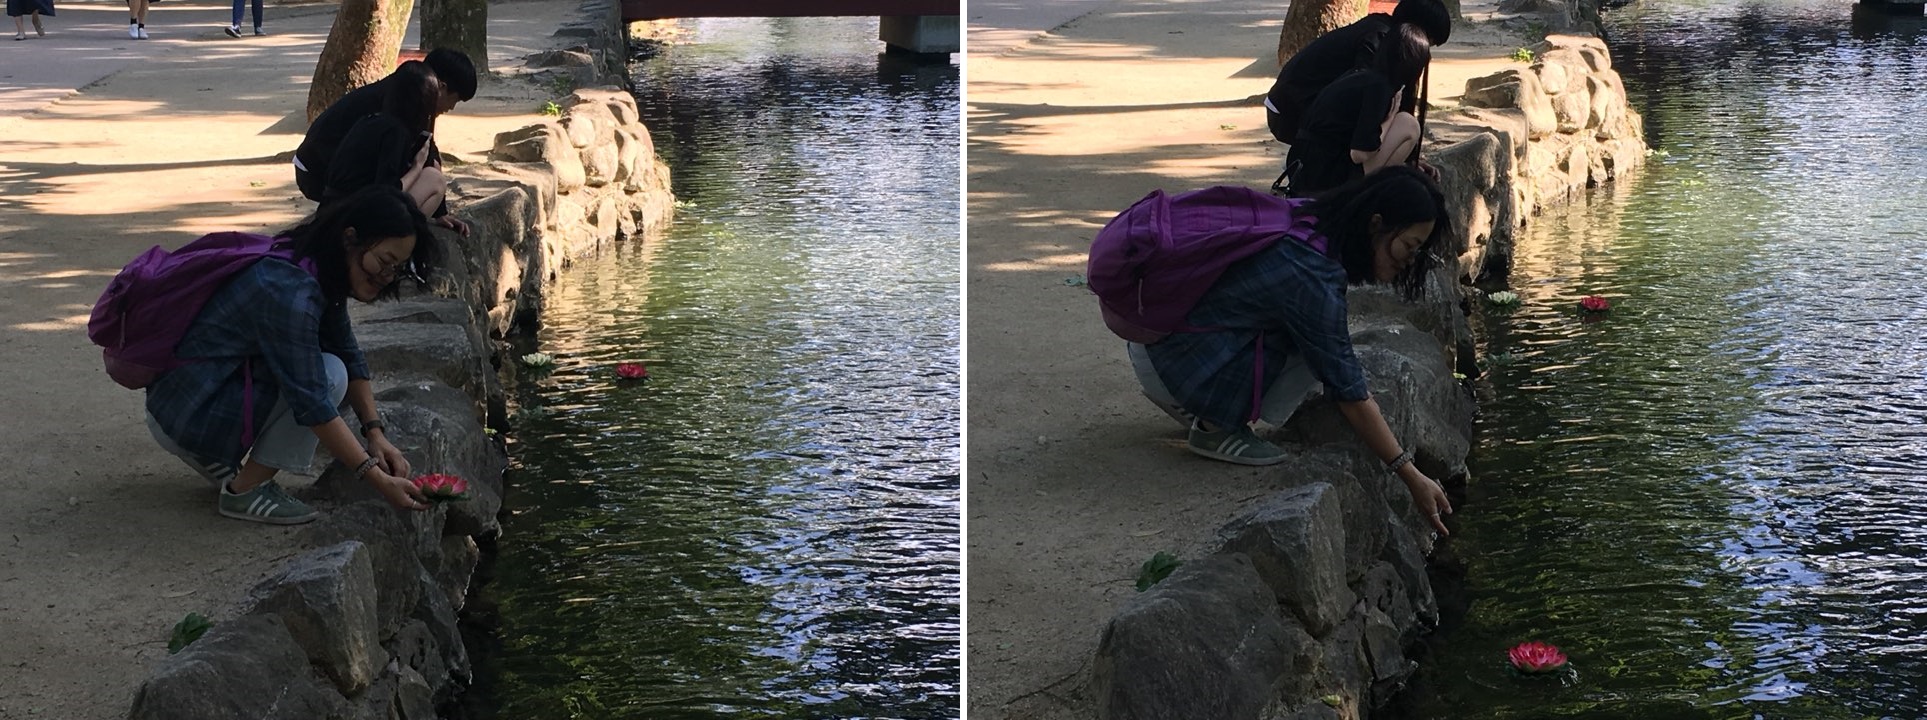 딸은 소원을 적은 꽃을 연못에 띄우고, 아빠는 그런 딸의 모습을 카메라에 담았습니다.